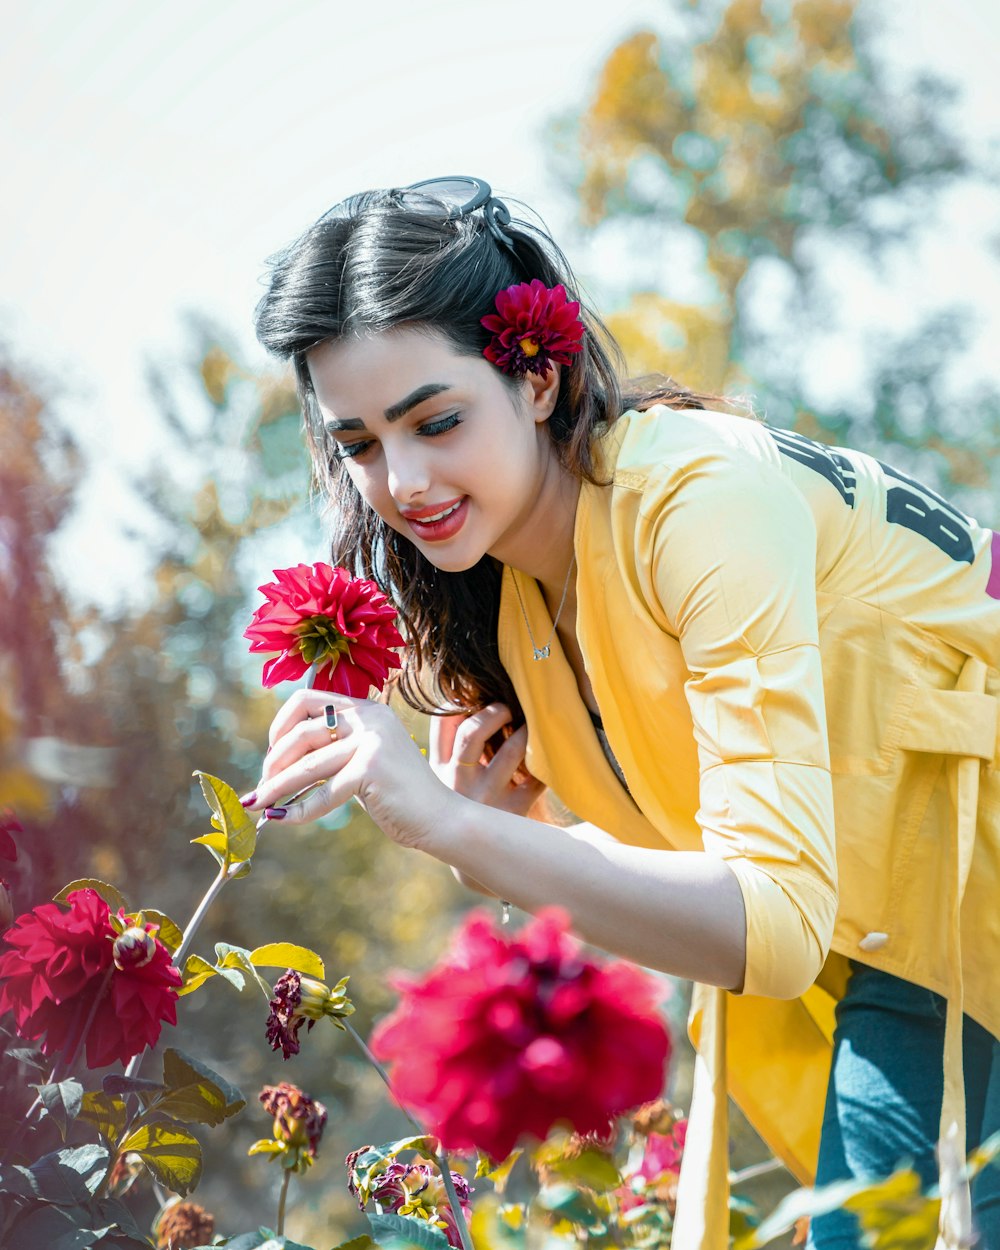 mulher no cardigã amarelo que segura a flor cor-de-rosa durante o dia